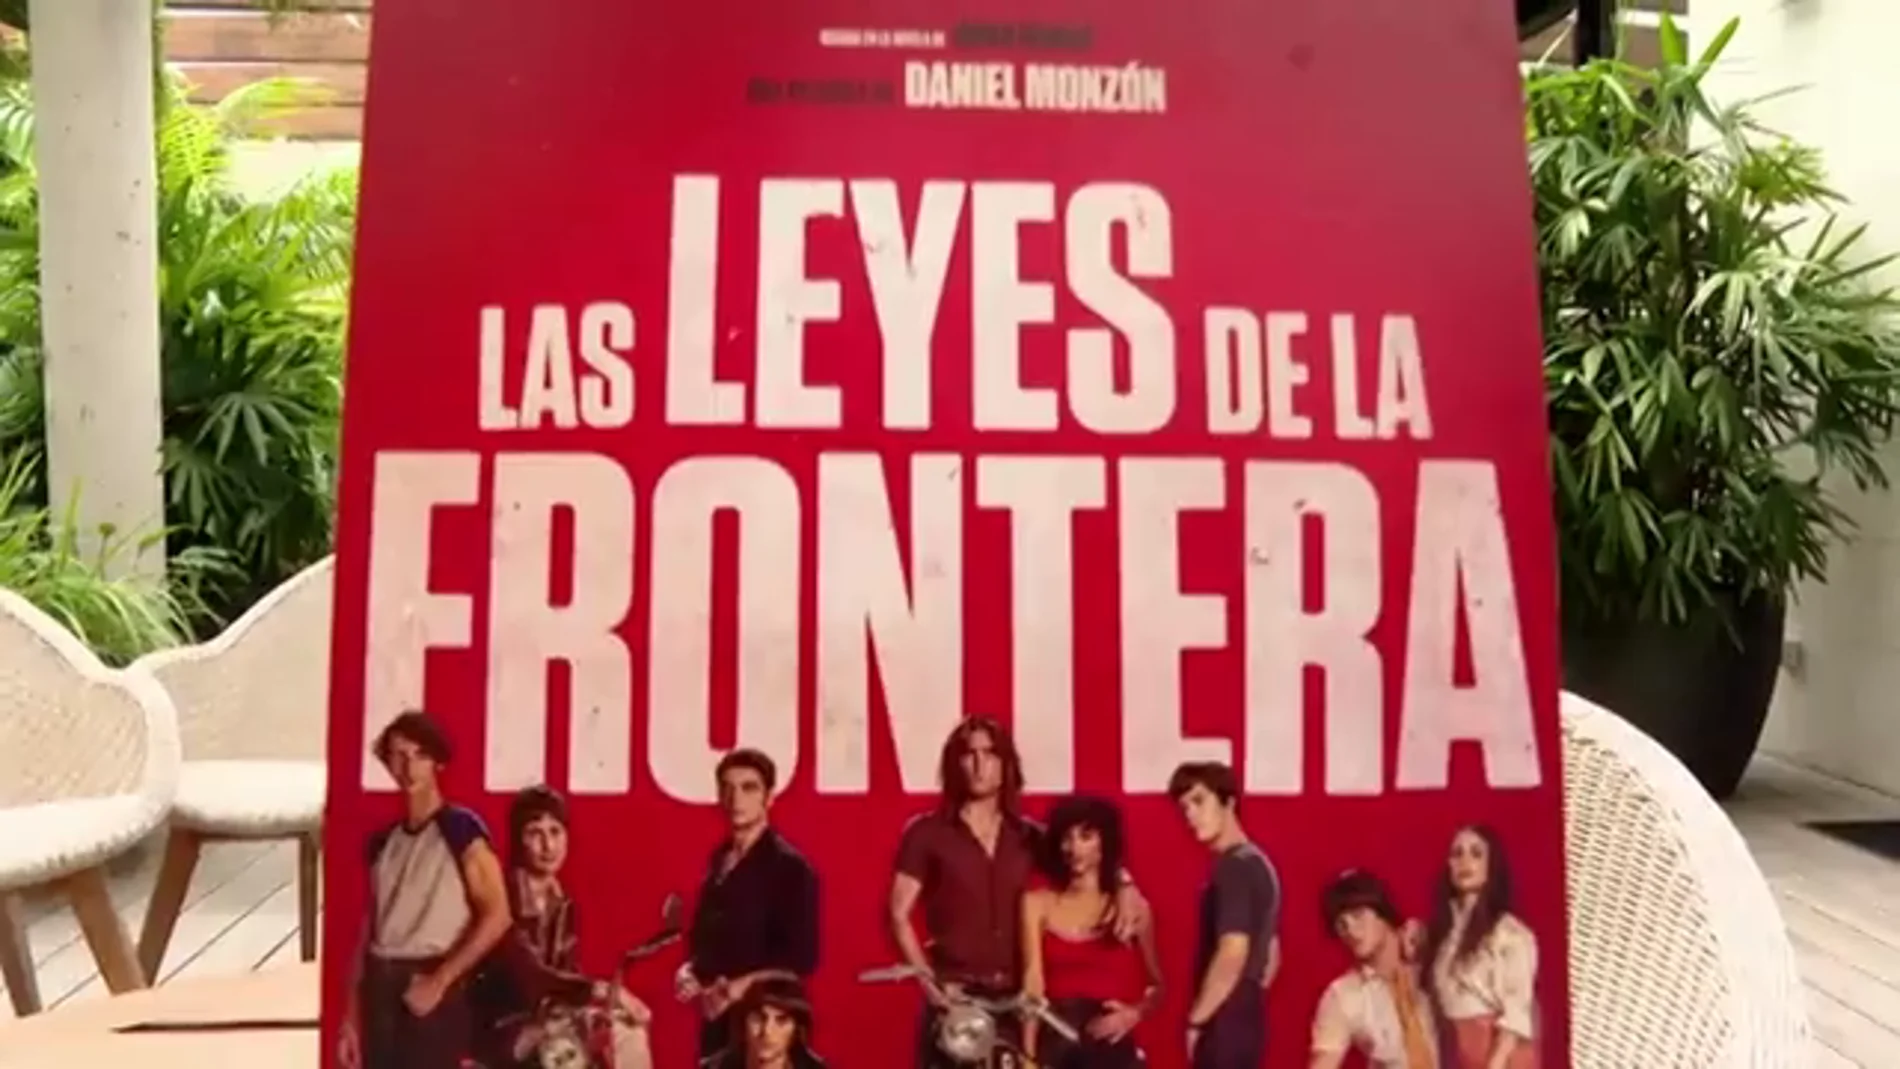  'Las leyes de la frontera', la nueva película de Daniel Monzón y Atresmedia, cerrará la 69ª edición del Festival de Cine de San Sebastián